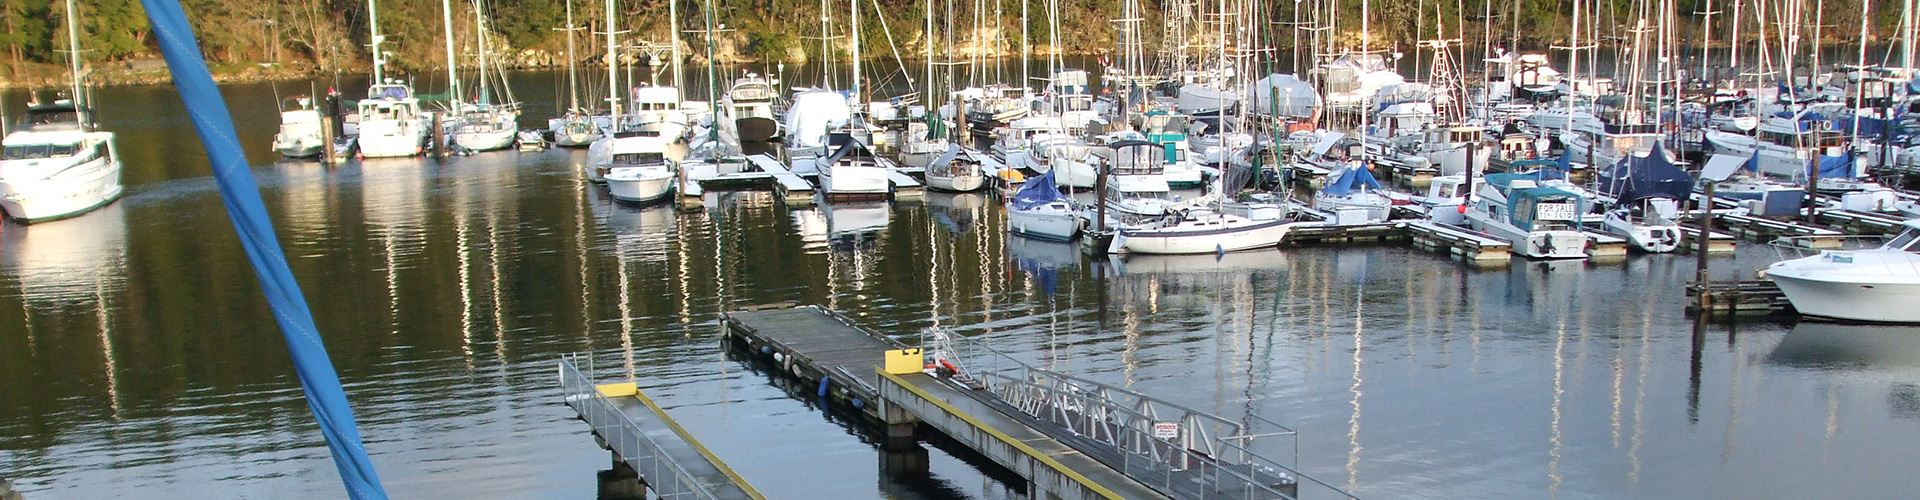 Nanaimo Boat Yard